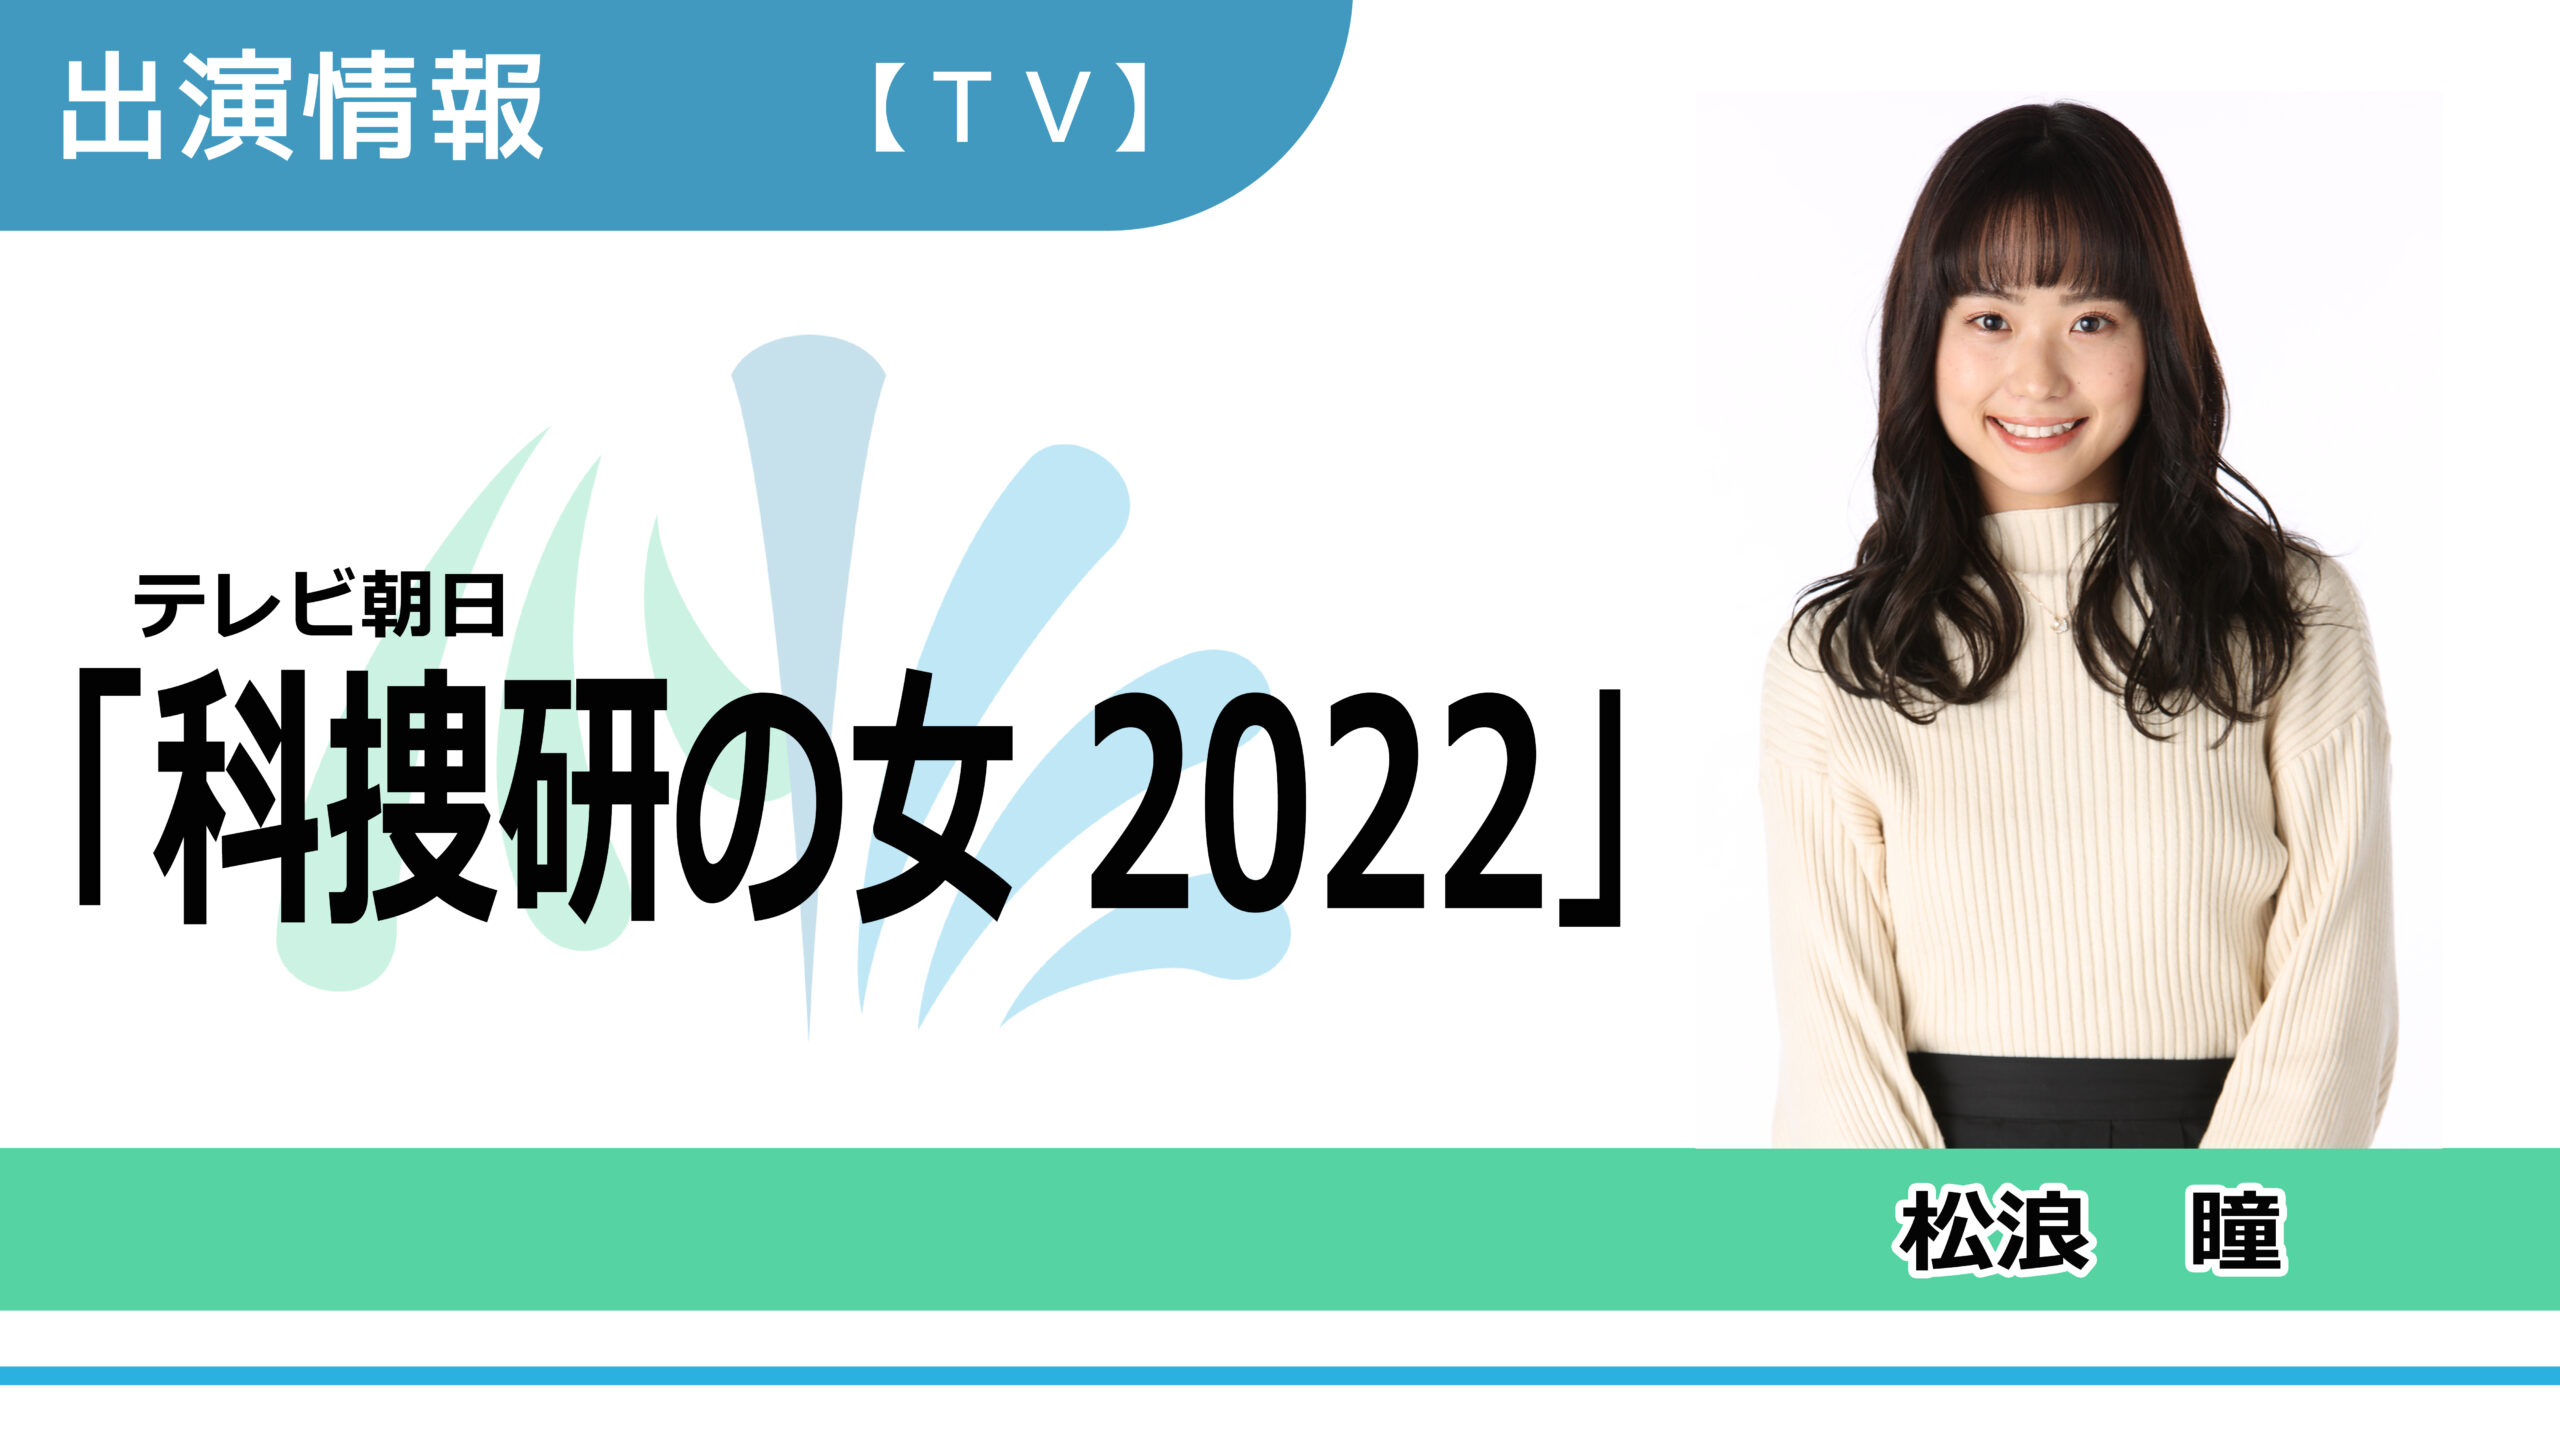 【出演情報】松浪瞳 / テレビ朝日「科捜研の女 2022（第8話）」出演